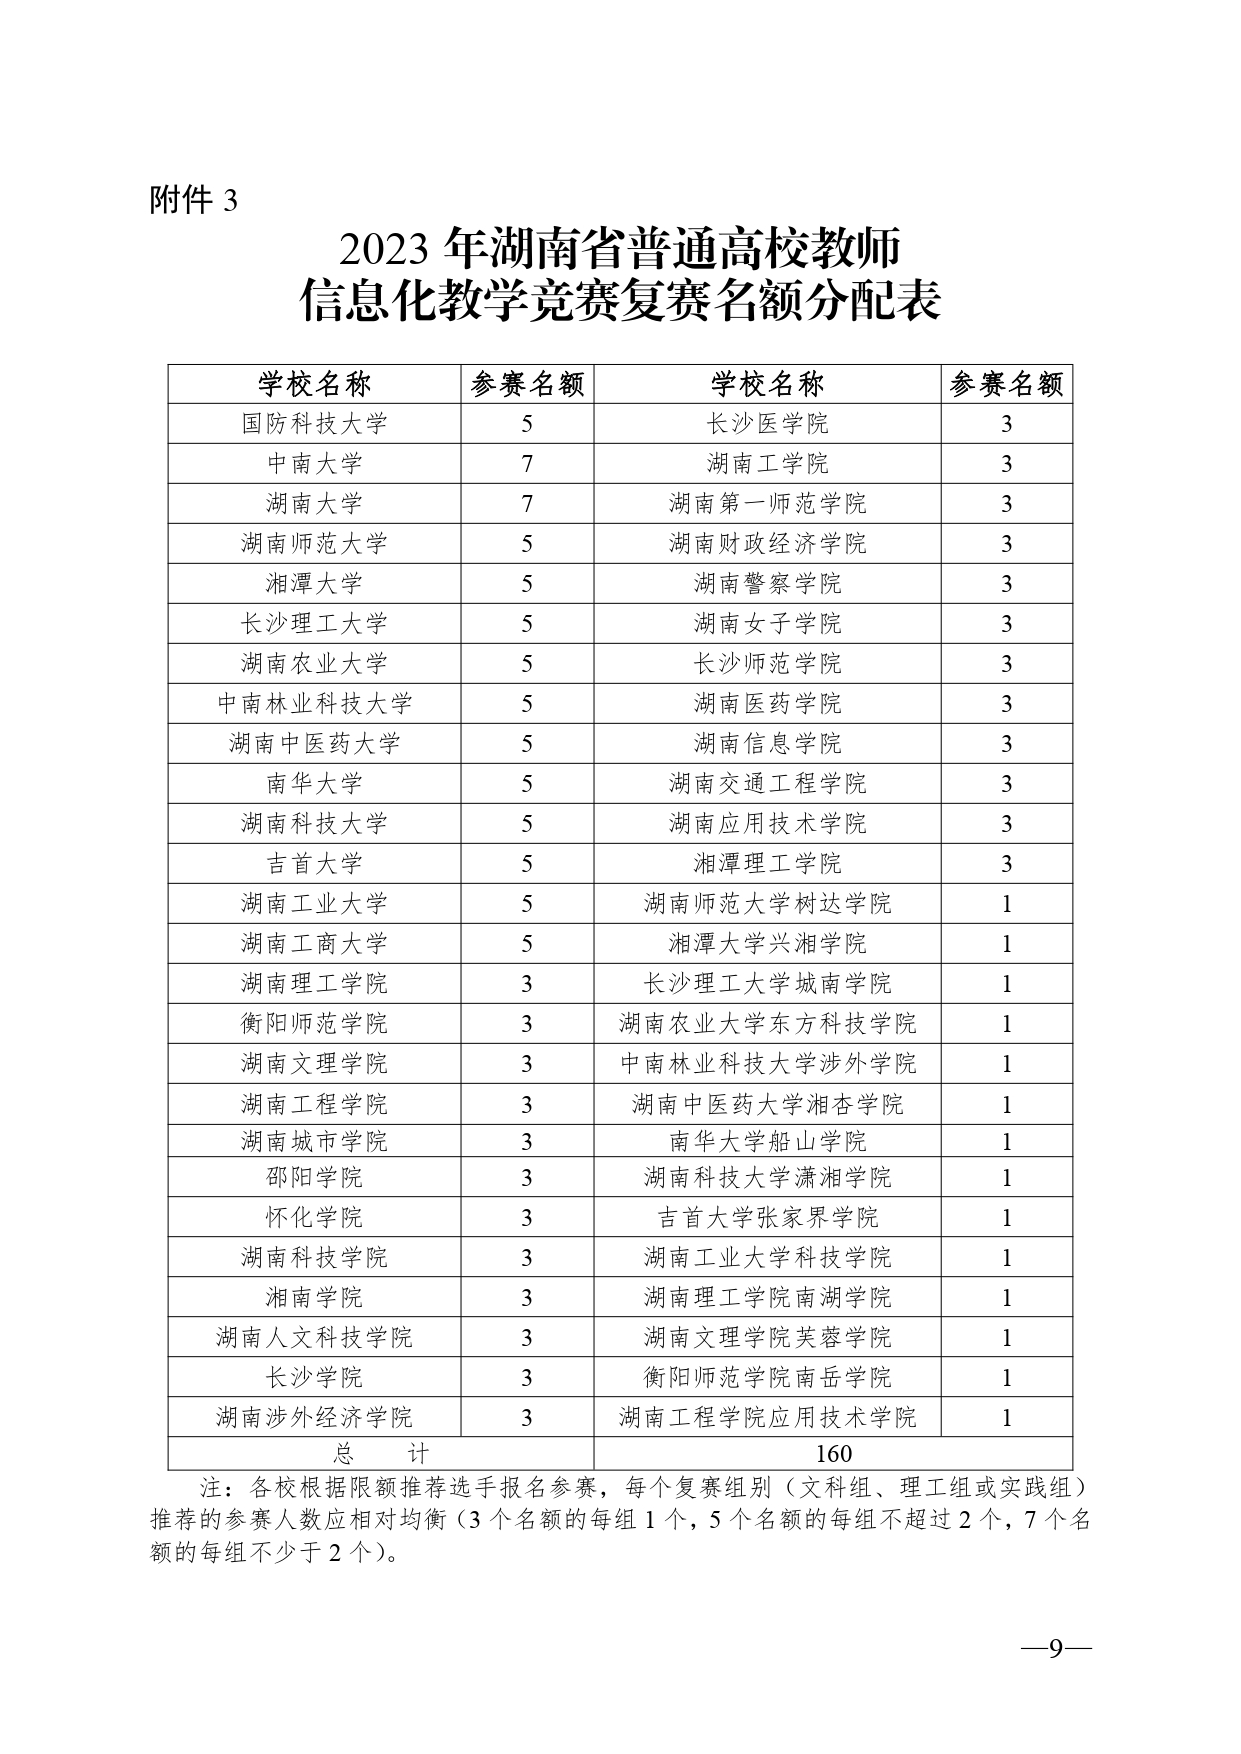 关于开展2023年湖南省普通高校教师信息化教学竞赛的通知正文(1)_page-0009.jpg